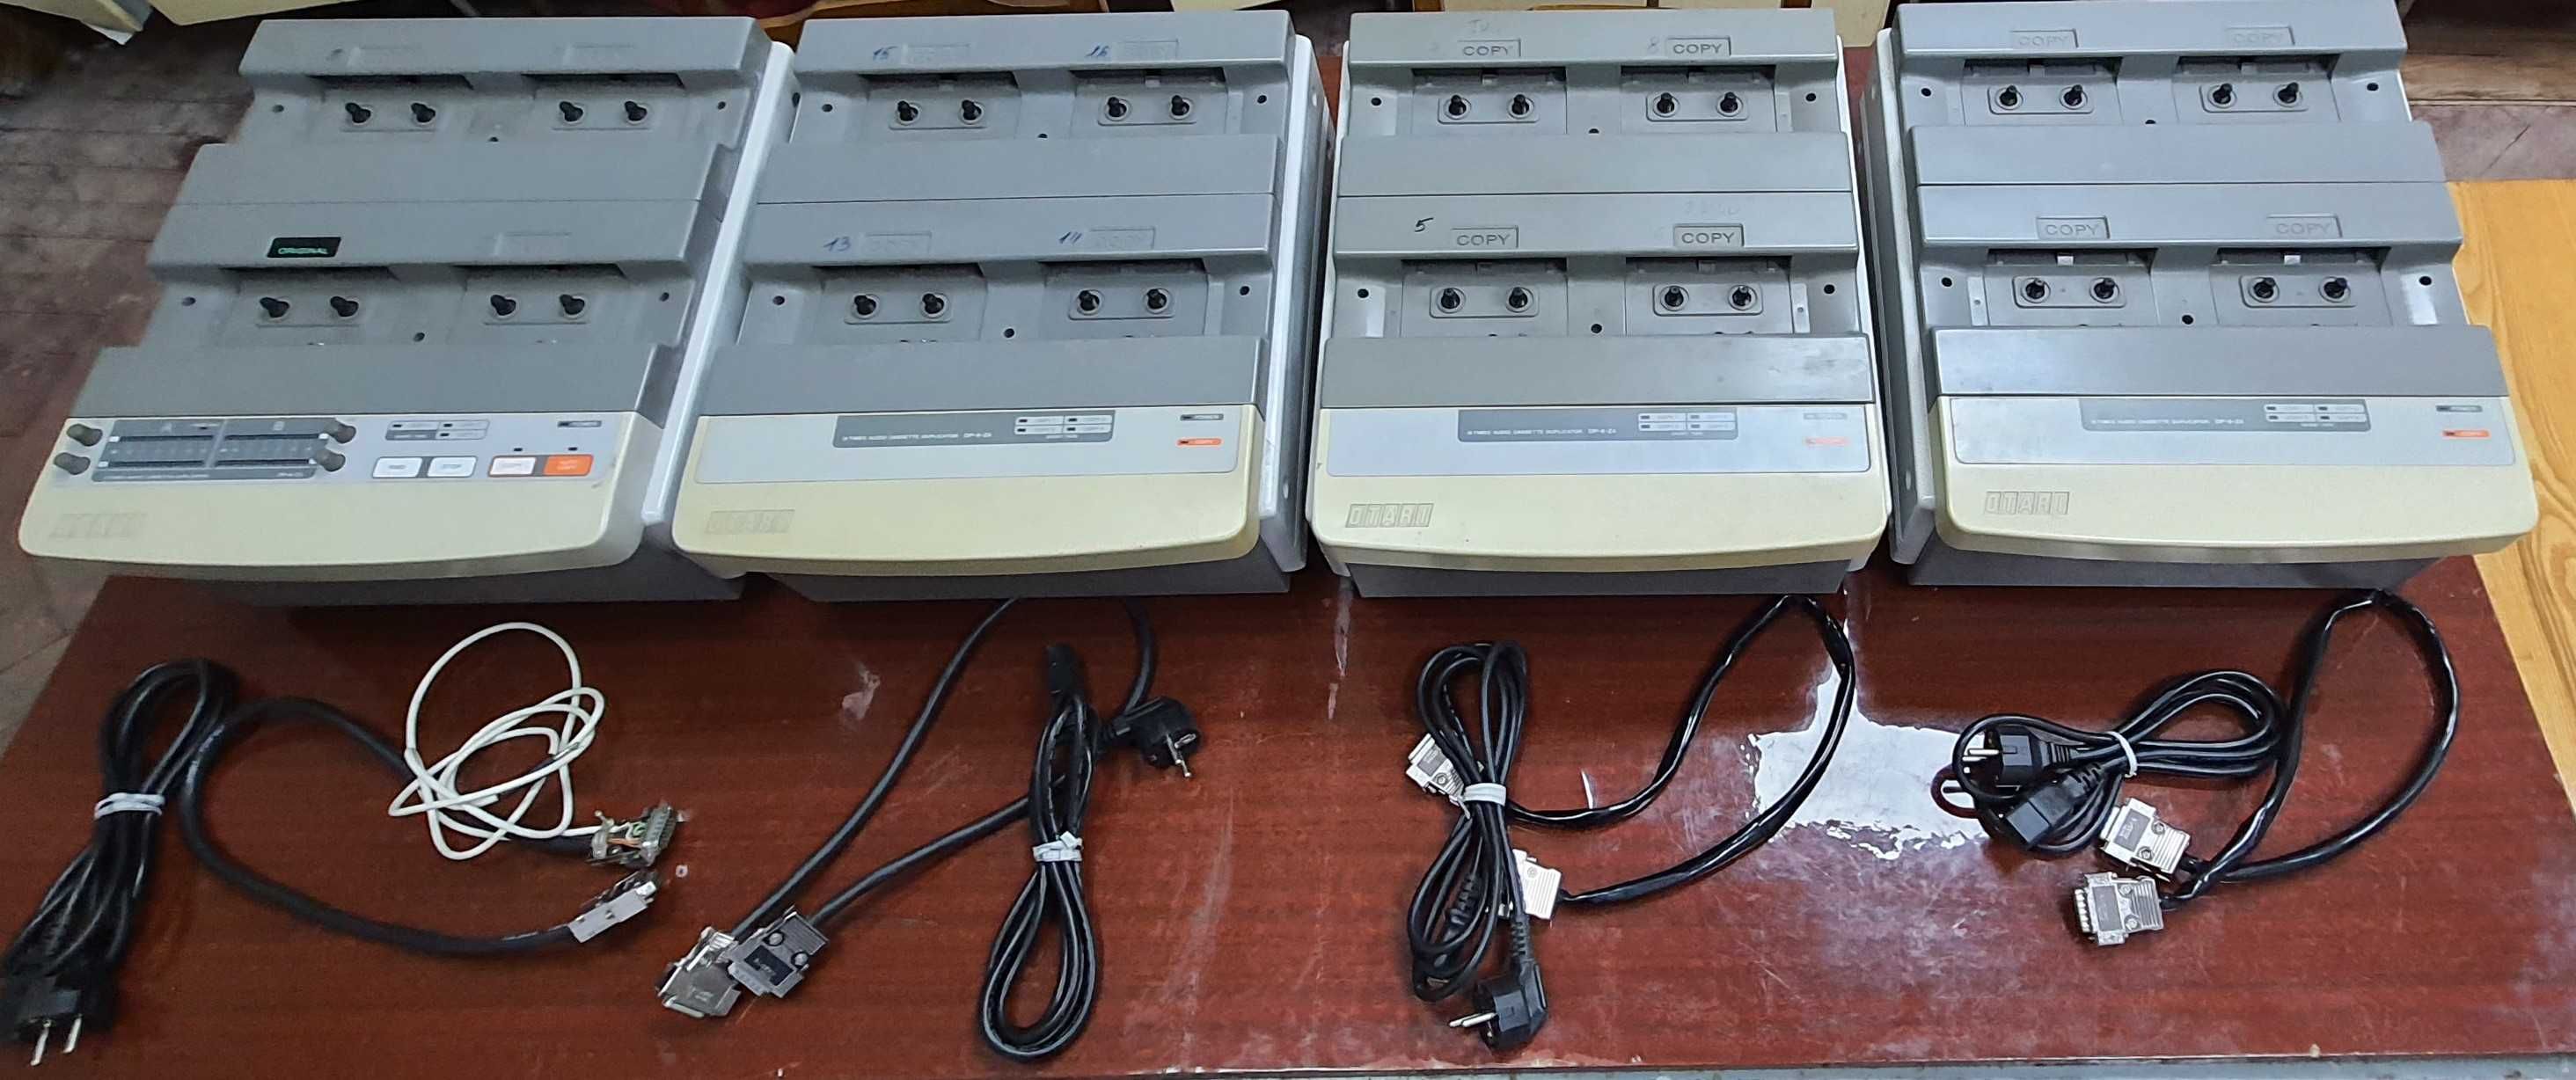 Линия для дублирования аудиокассет  Дубликаторы OTARI DP-8-C3, DP-8-Z4